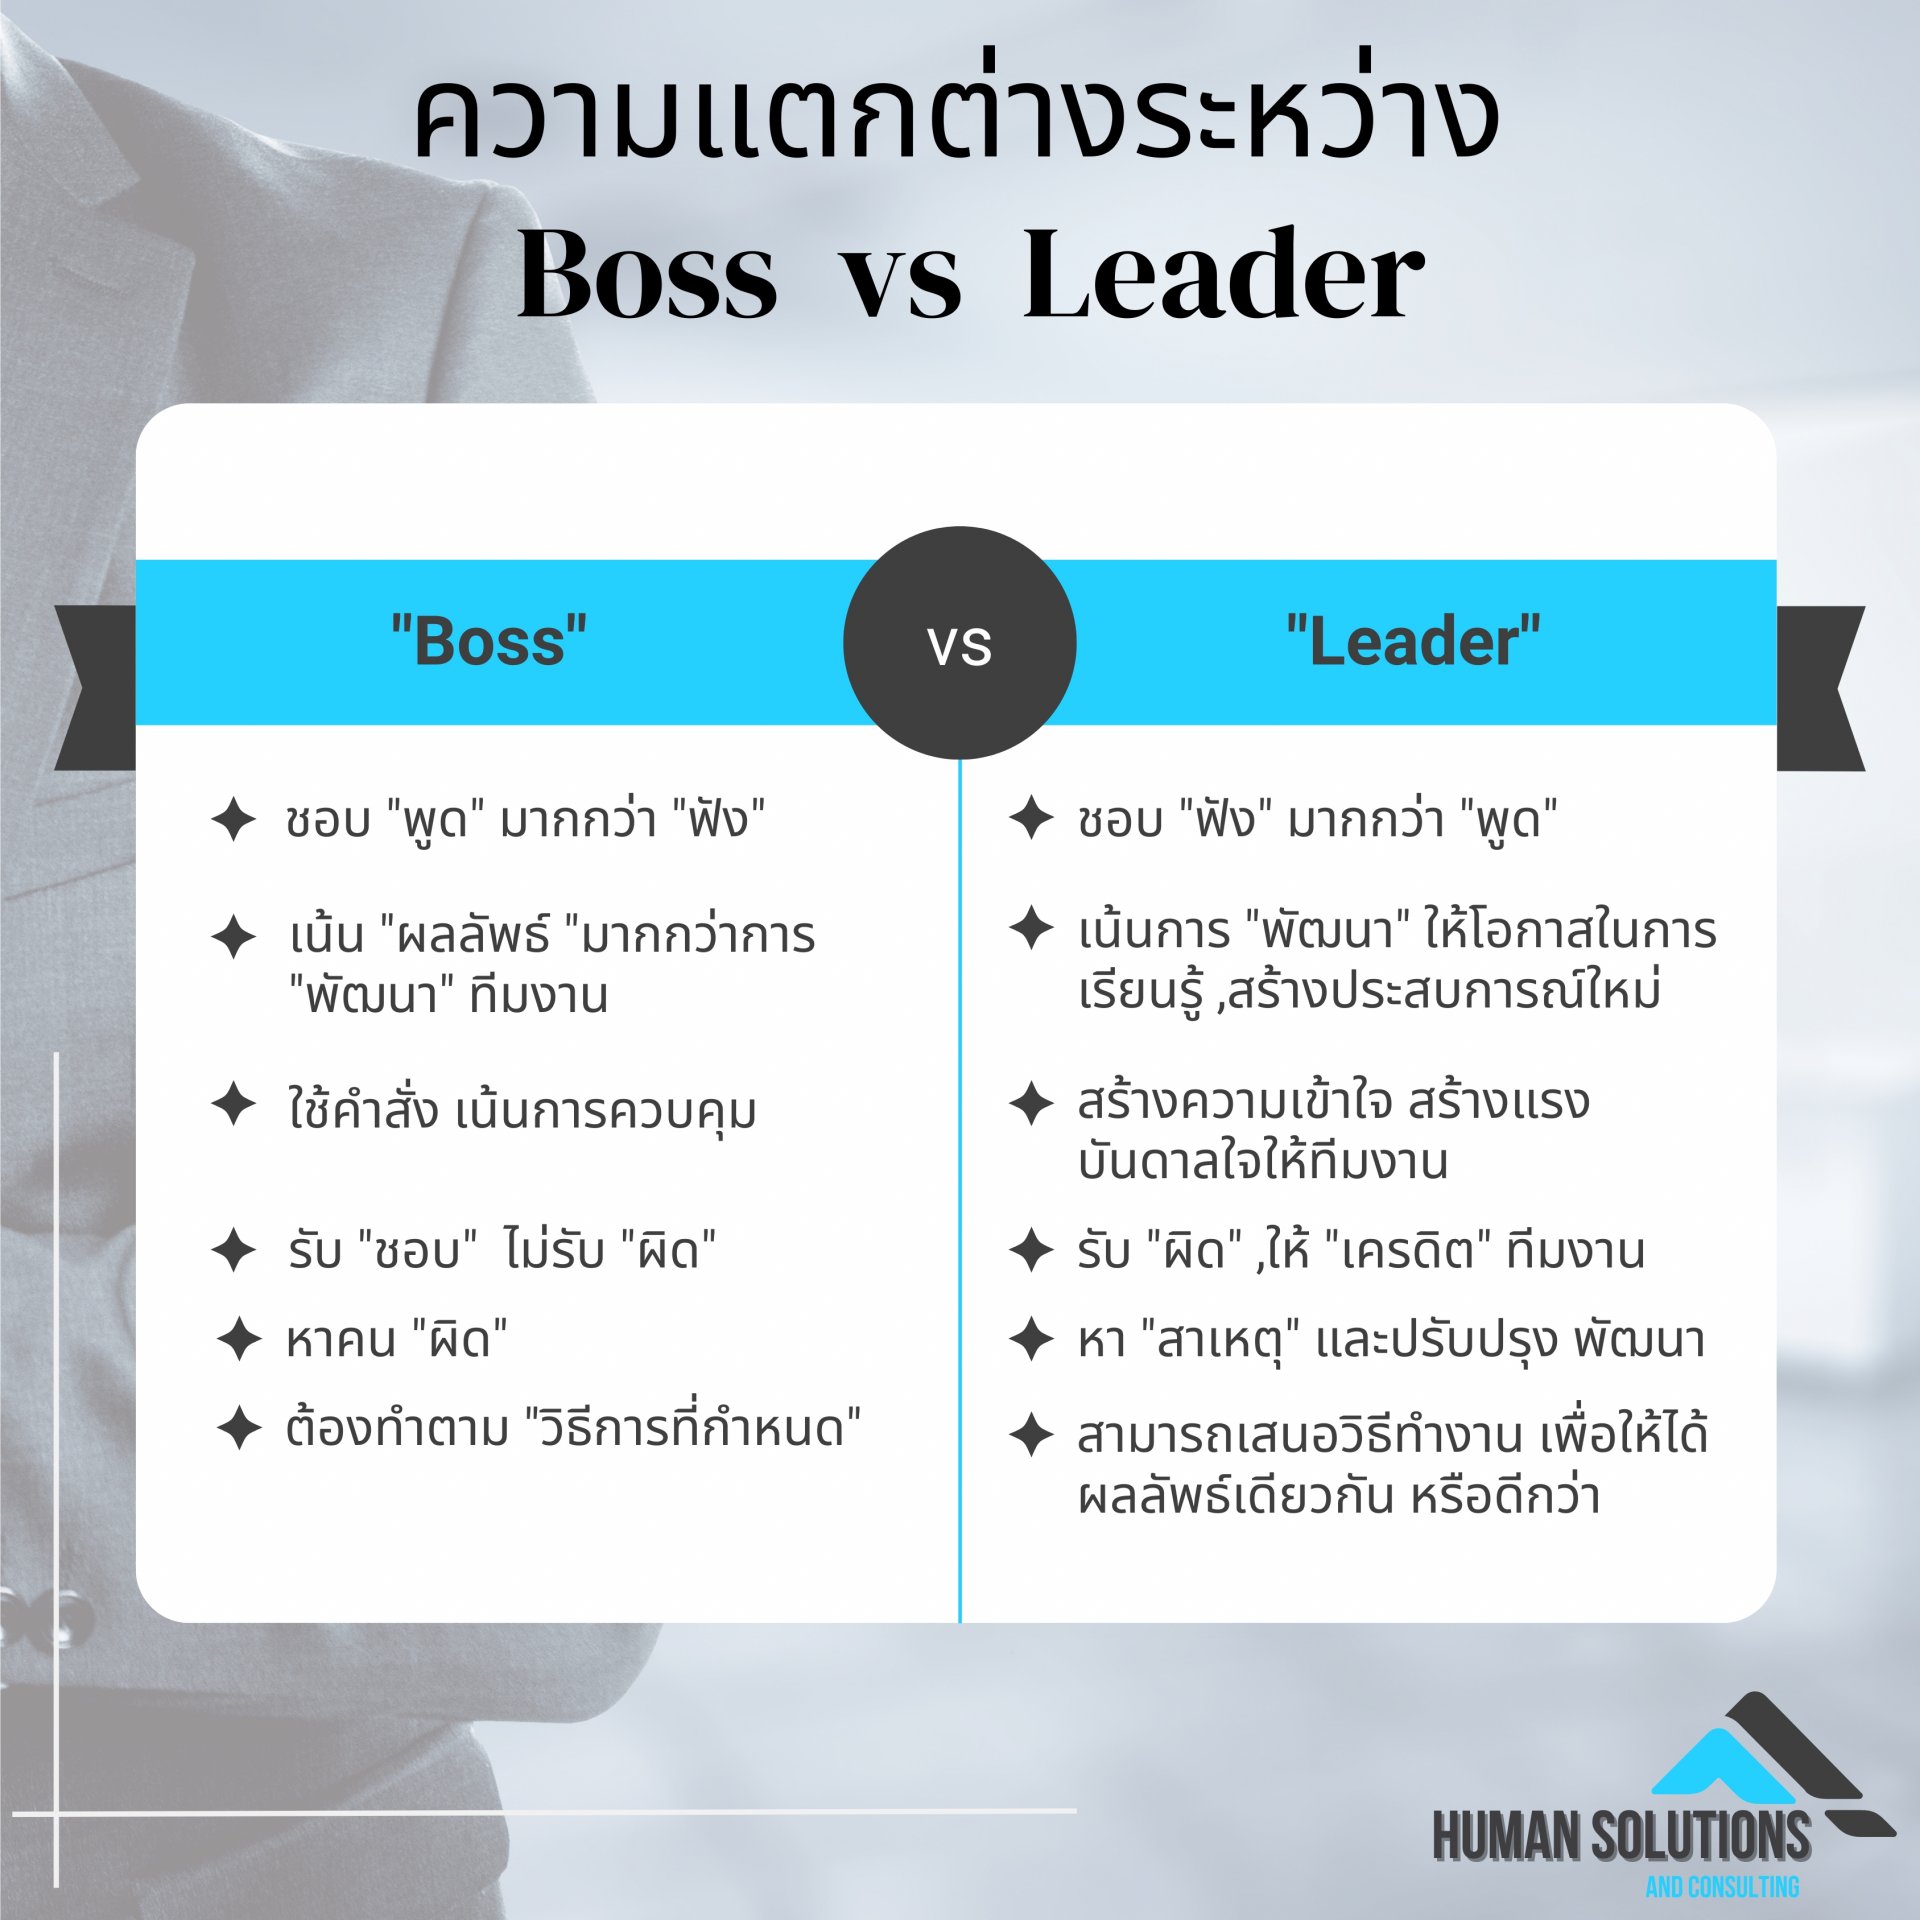 "Boss" Vs "Leader"